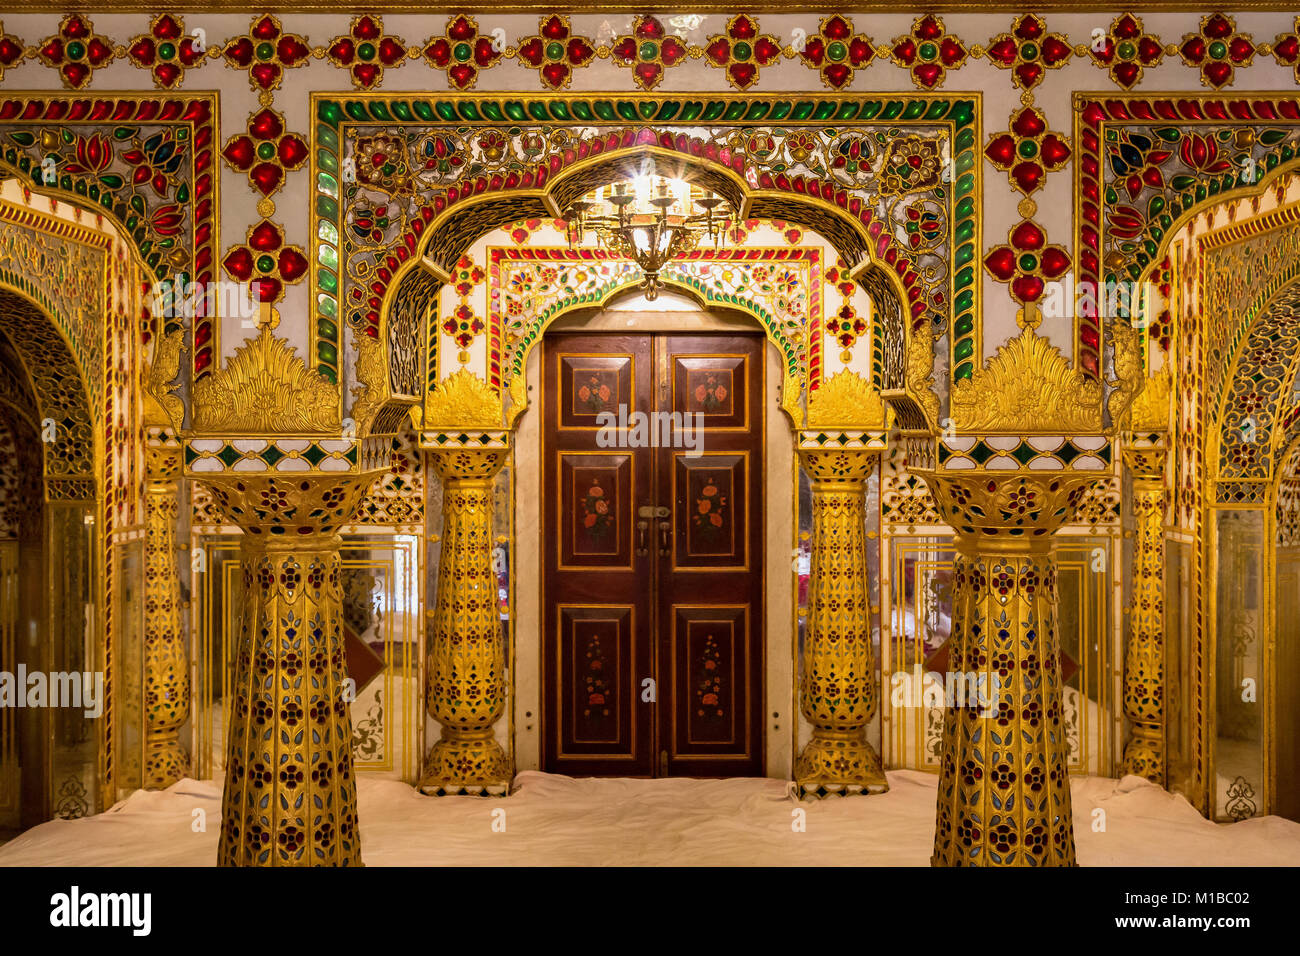 City Palace Jaipur Rajasthan Royal Palace Room